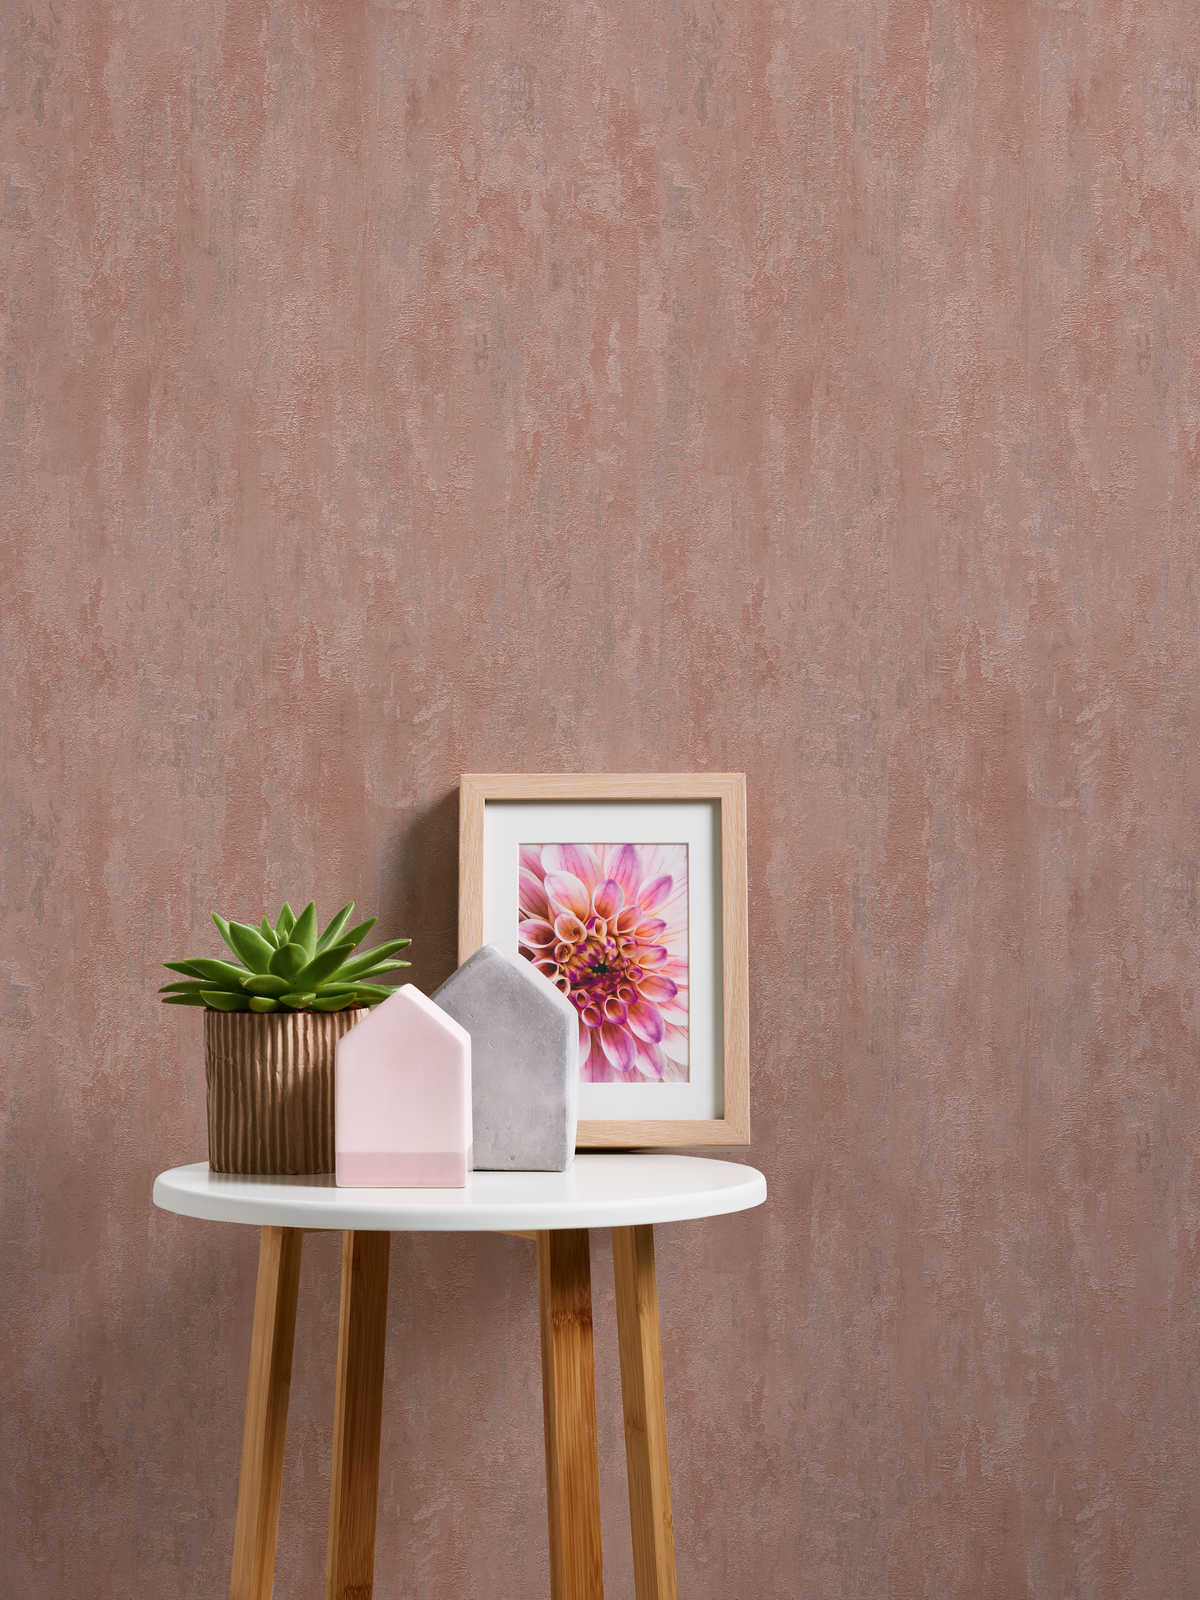             behangpapier industriële stijl met textuureffect - metallic, roze
        